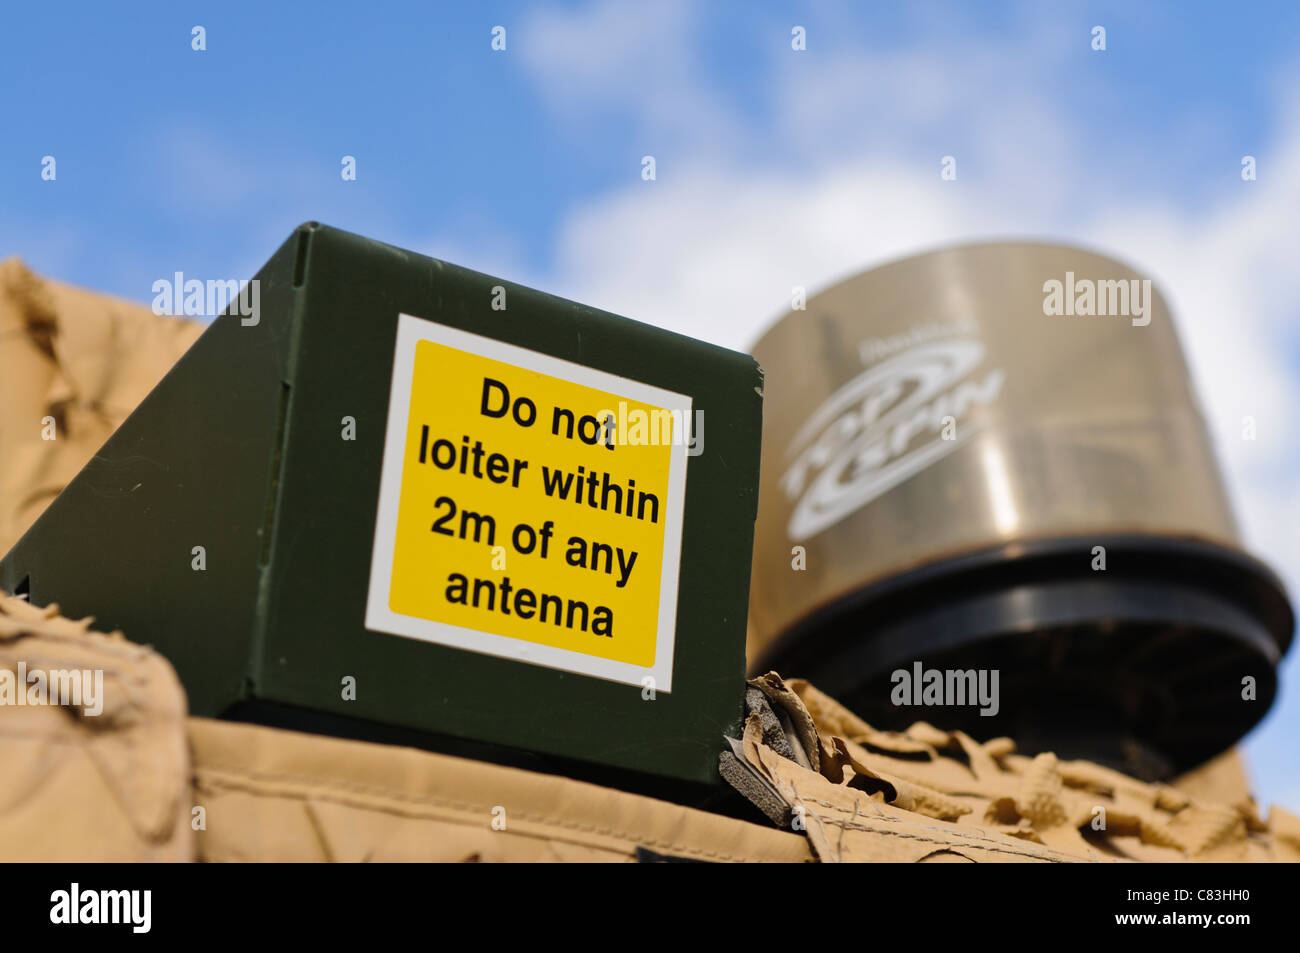 Advertencia sobre un vehículo militar "no merodeen dentro de 2m de cualquier antena" Foto de stock